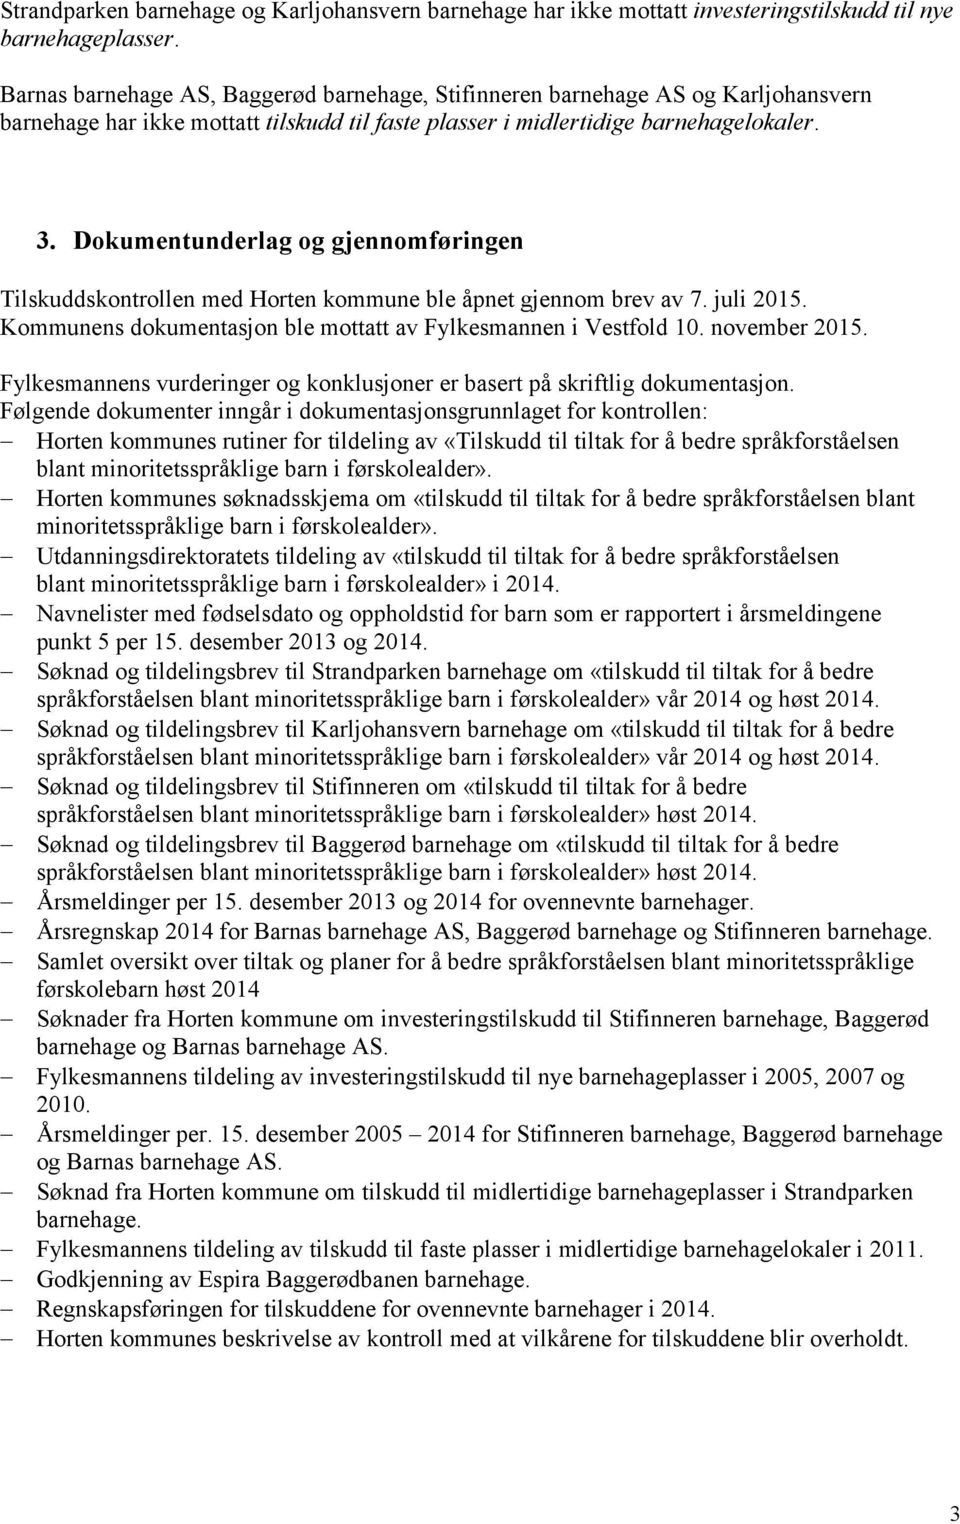 Dokumentunderlag og gjennomføringen Tilskuddskontrollen med Horten kommune ble åpnet gjennom brev av 7. juli 2015. Kommunens dokumentasjon ble mottatt av Fylkesmannen i Vestfold 10. november 2015.